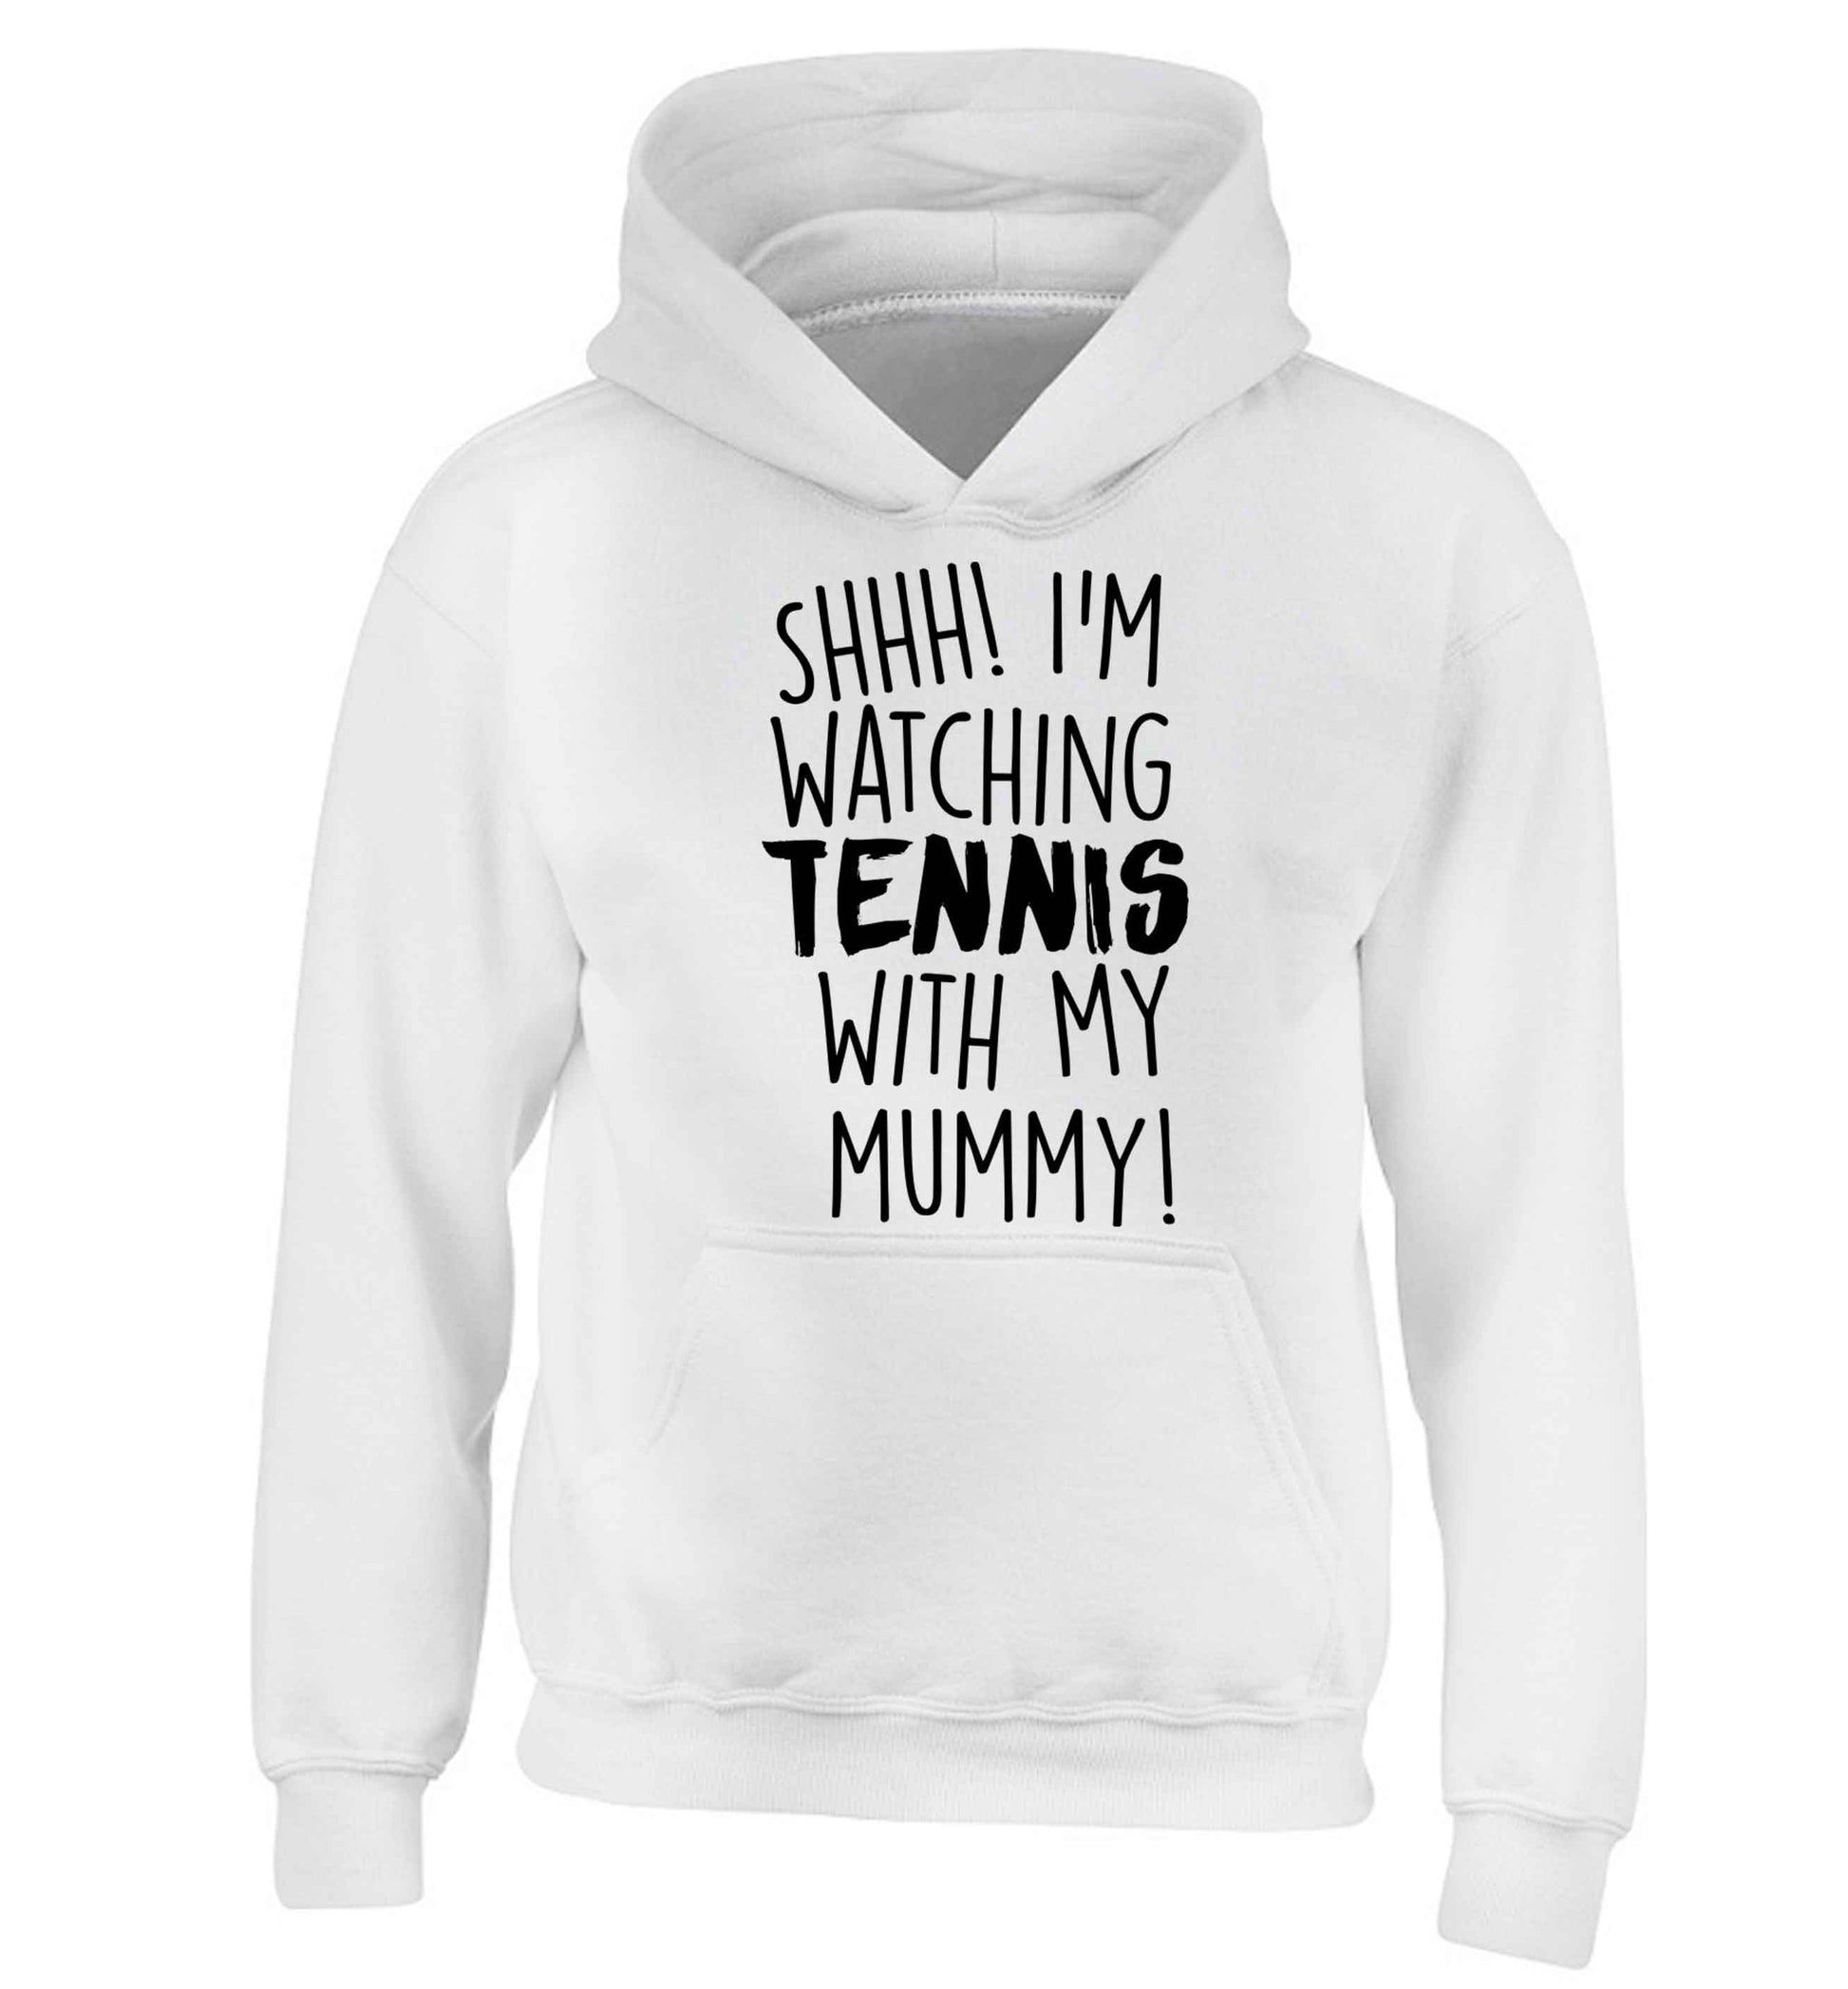 Shh! I'm watching tennis with my mummy! children's white hoodie 12-13 Years